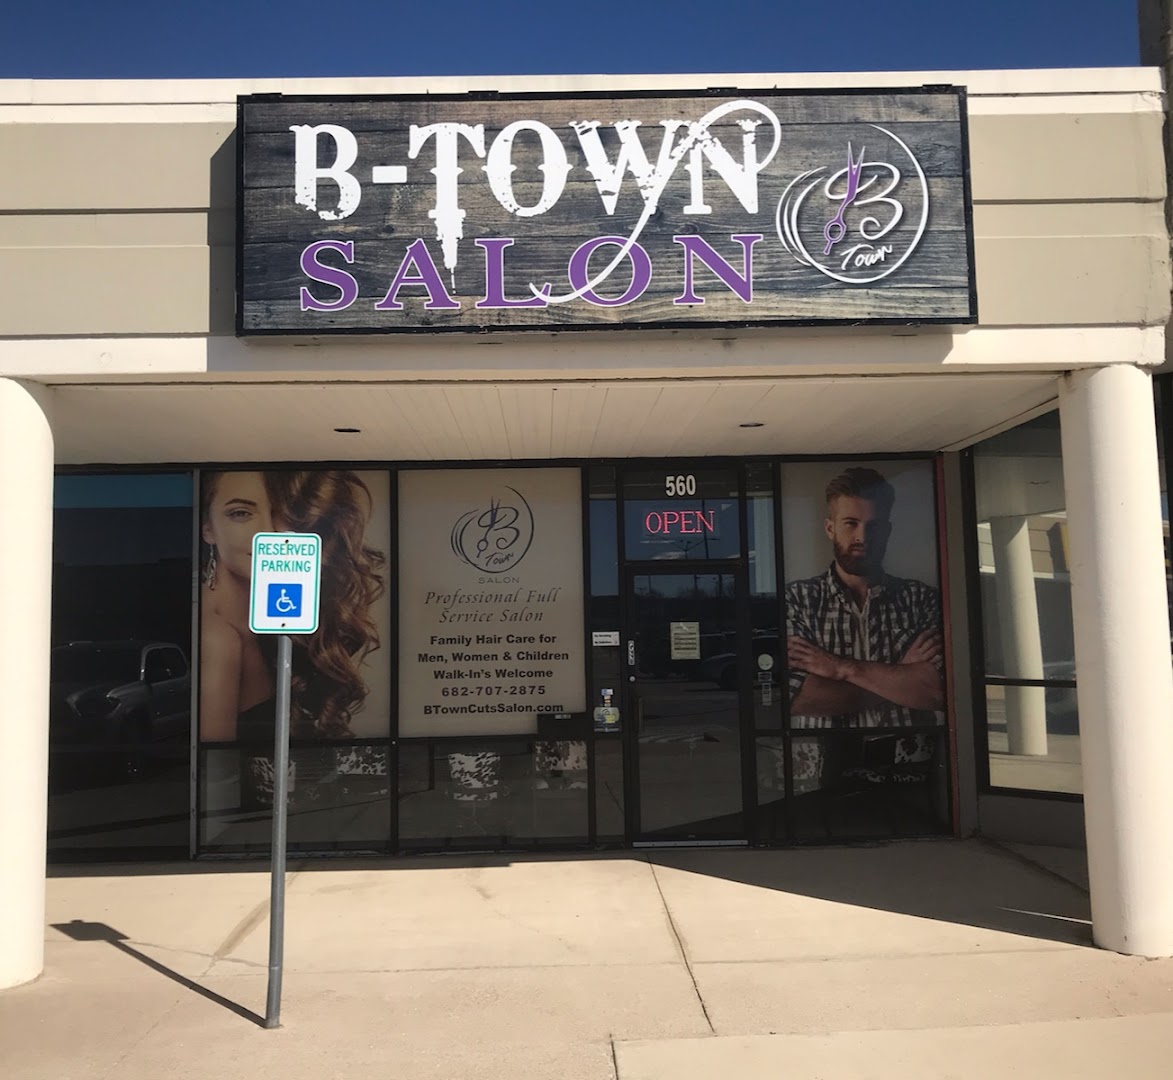 Btown Cuts Salon